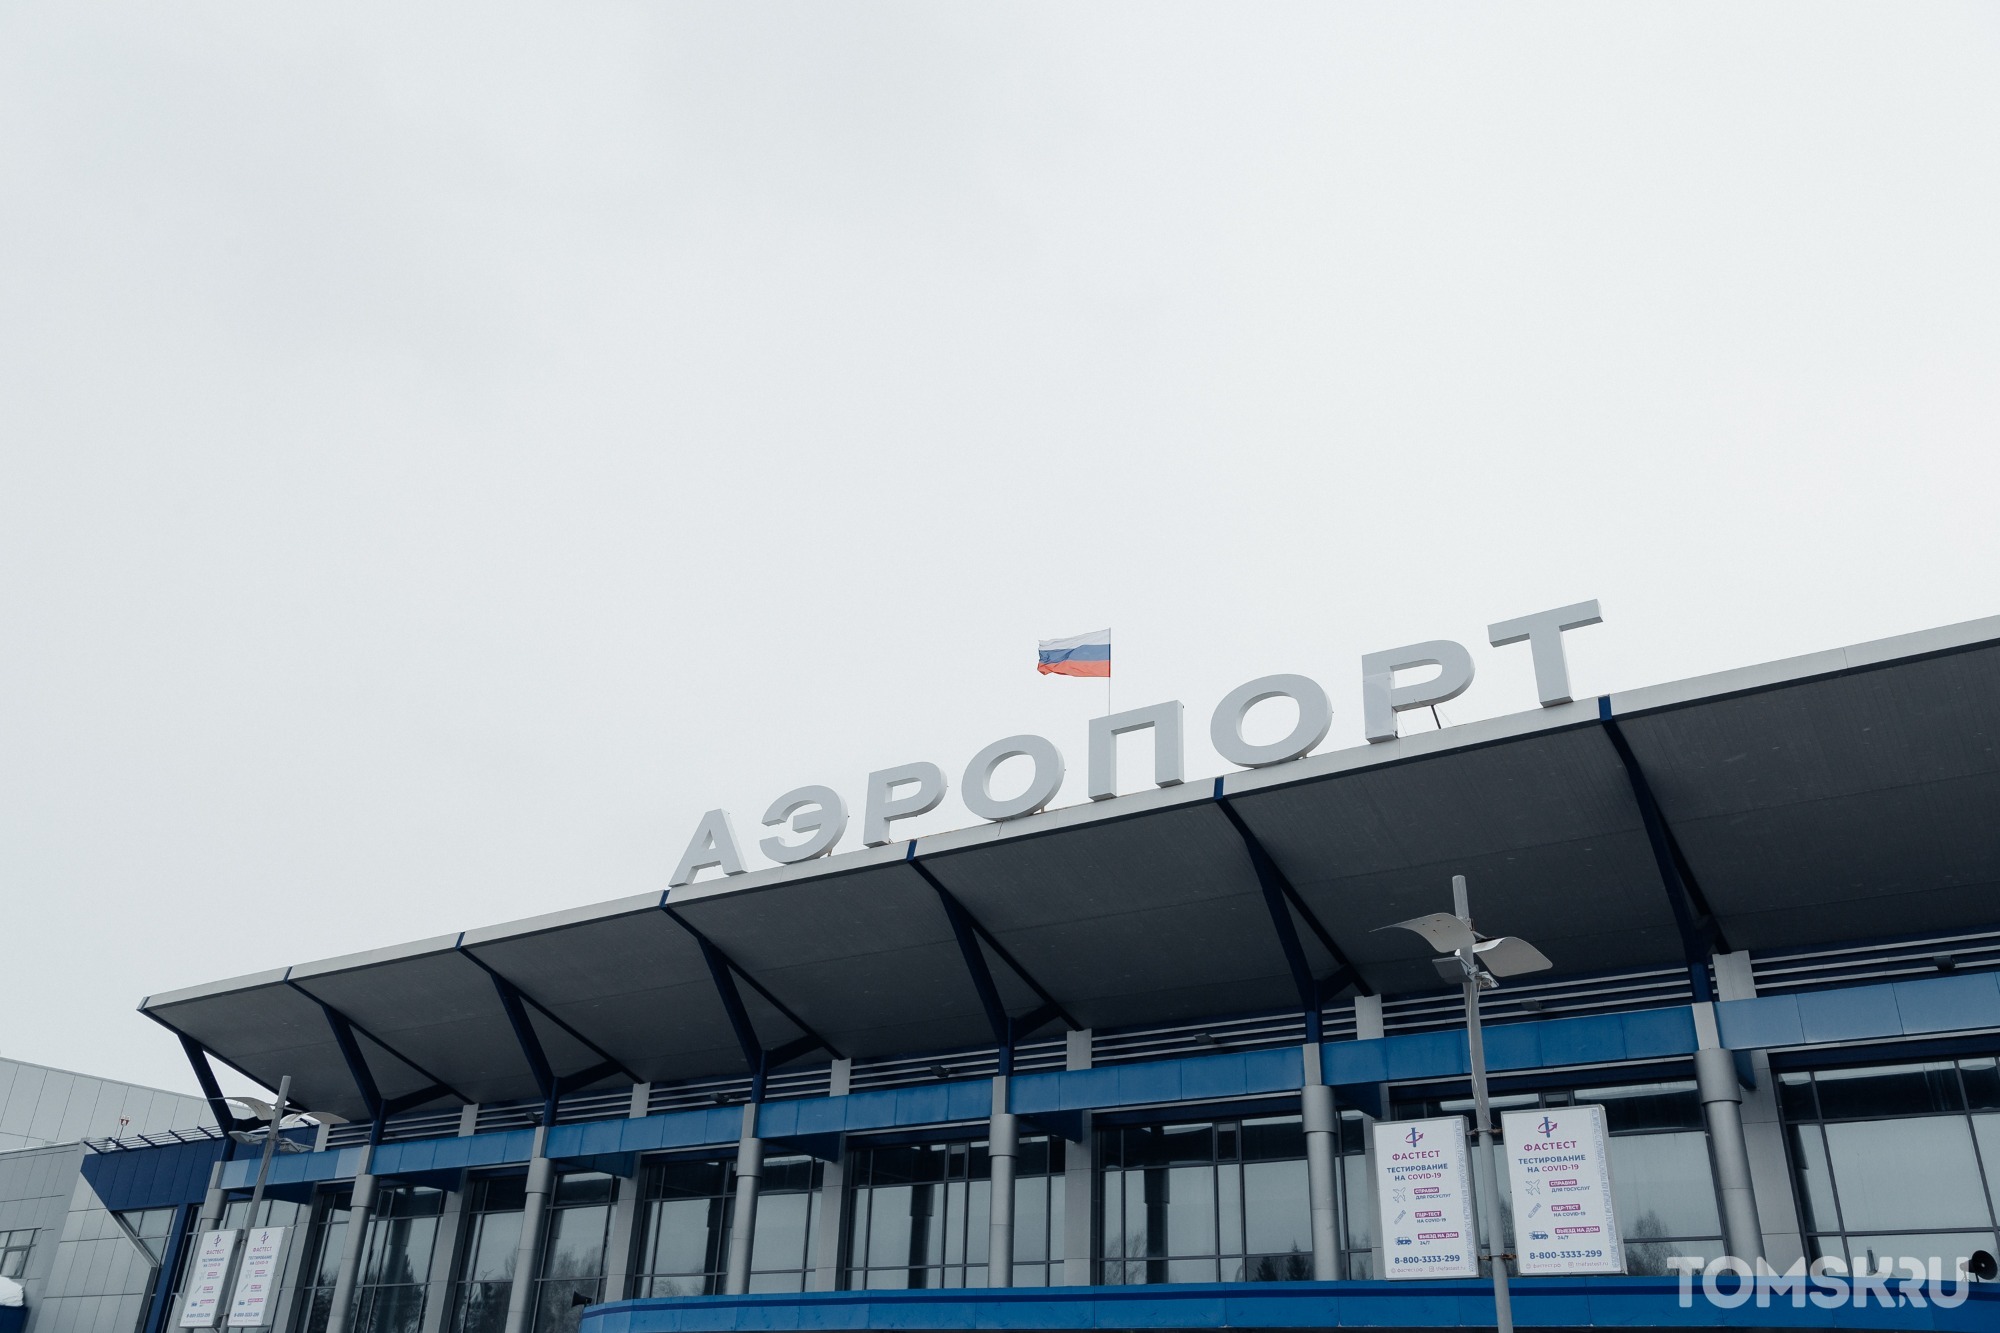 Через два дня аэропорт Томска вернется к обычному режиму работы 